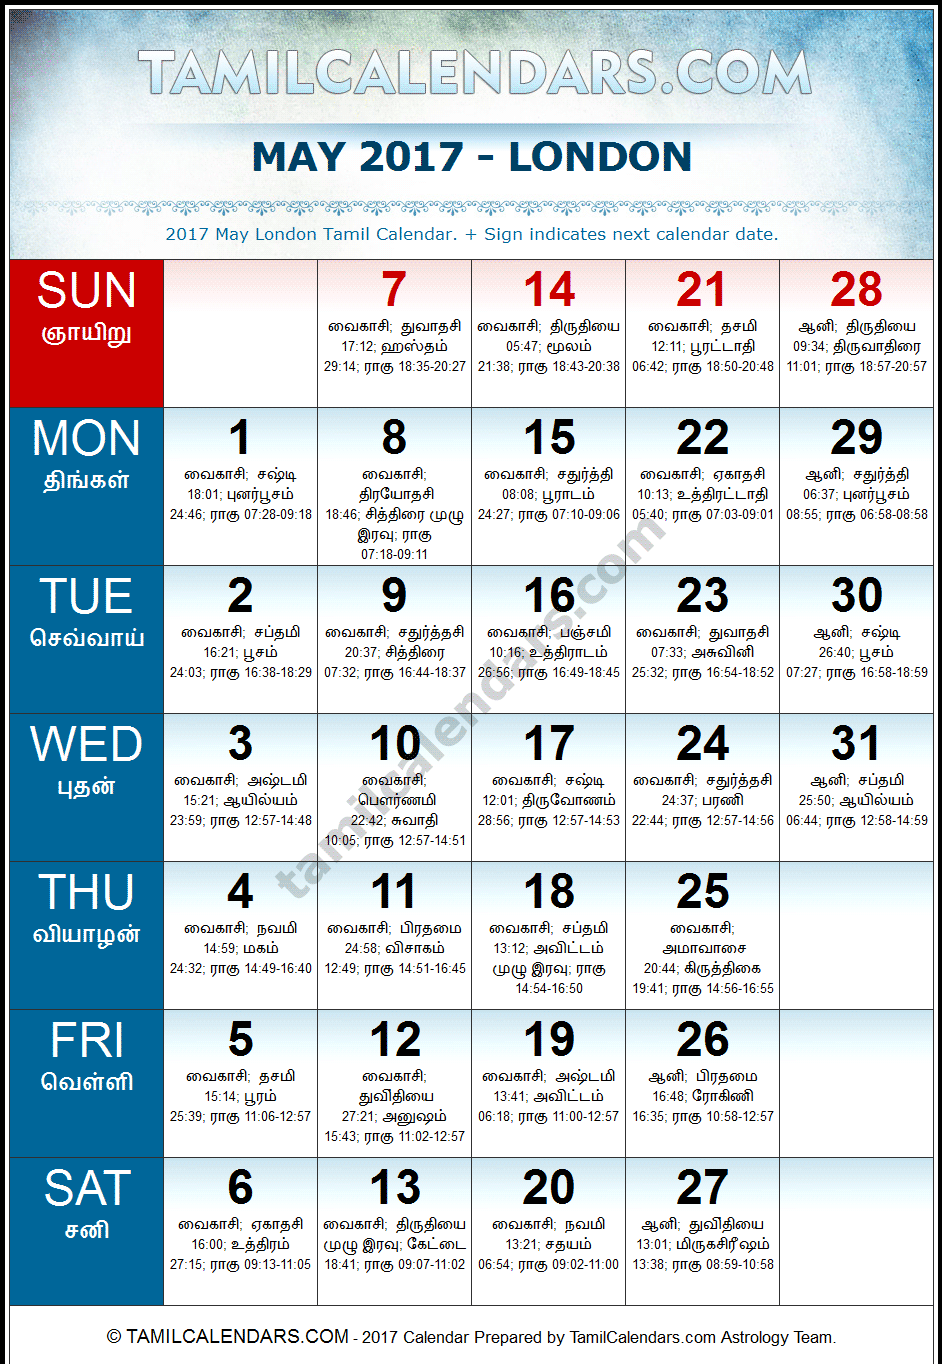 May 2017 Tamil Calendar for London, UK